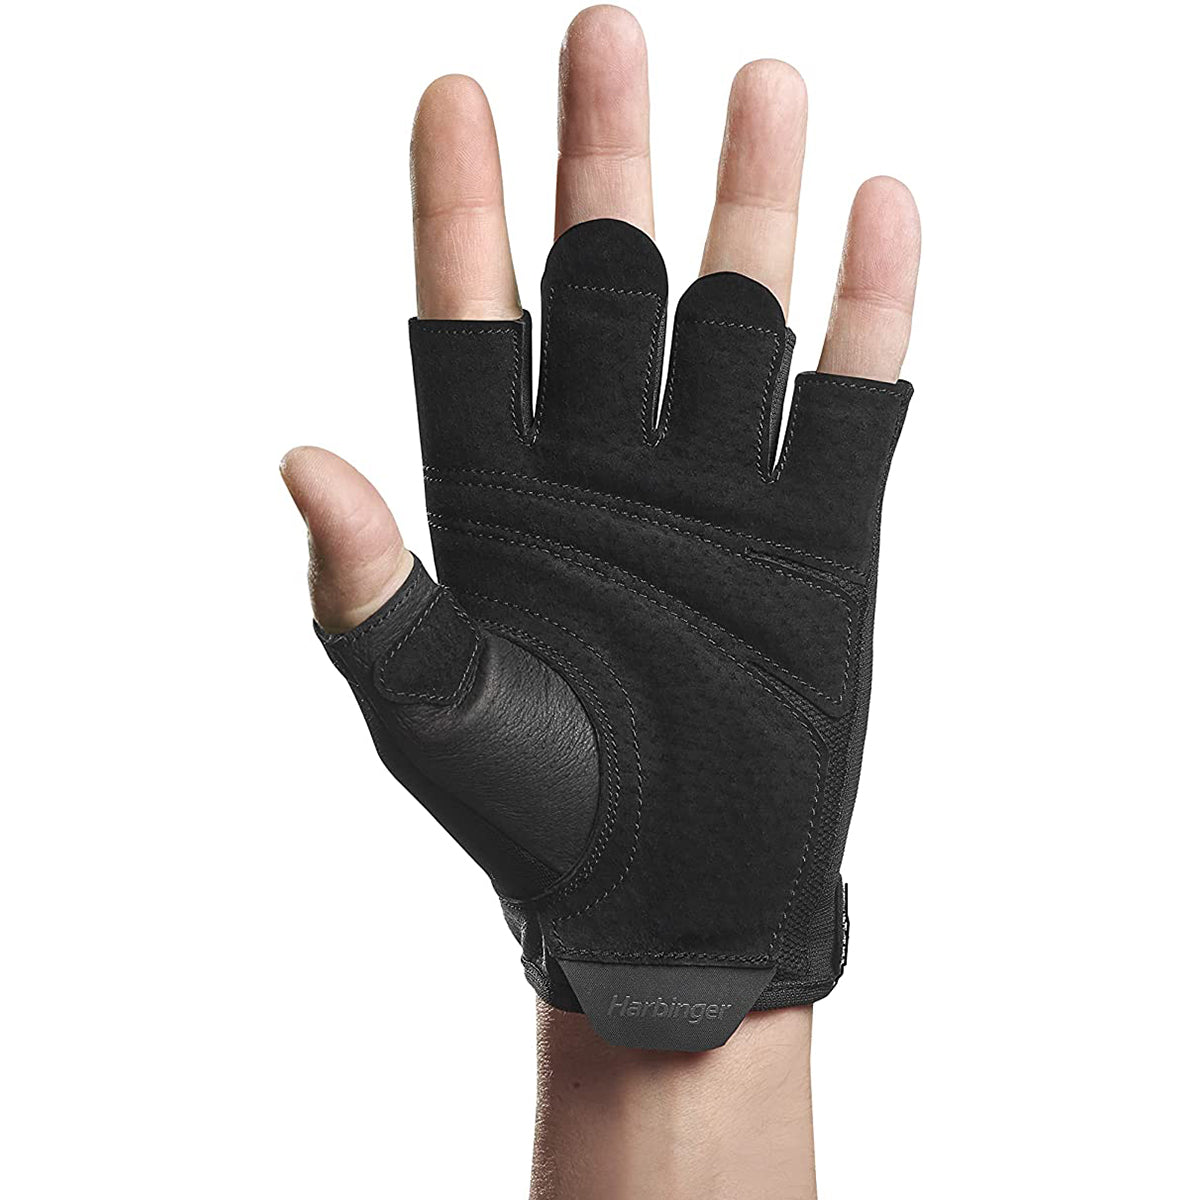 Harbinger Unisex Power Weight Lifting Gloves 2.0 - Black Harbinger